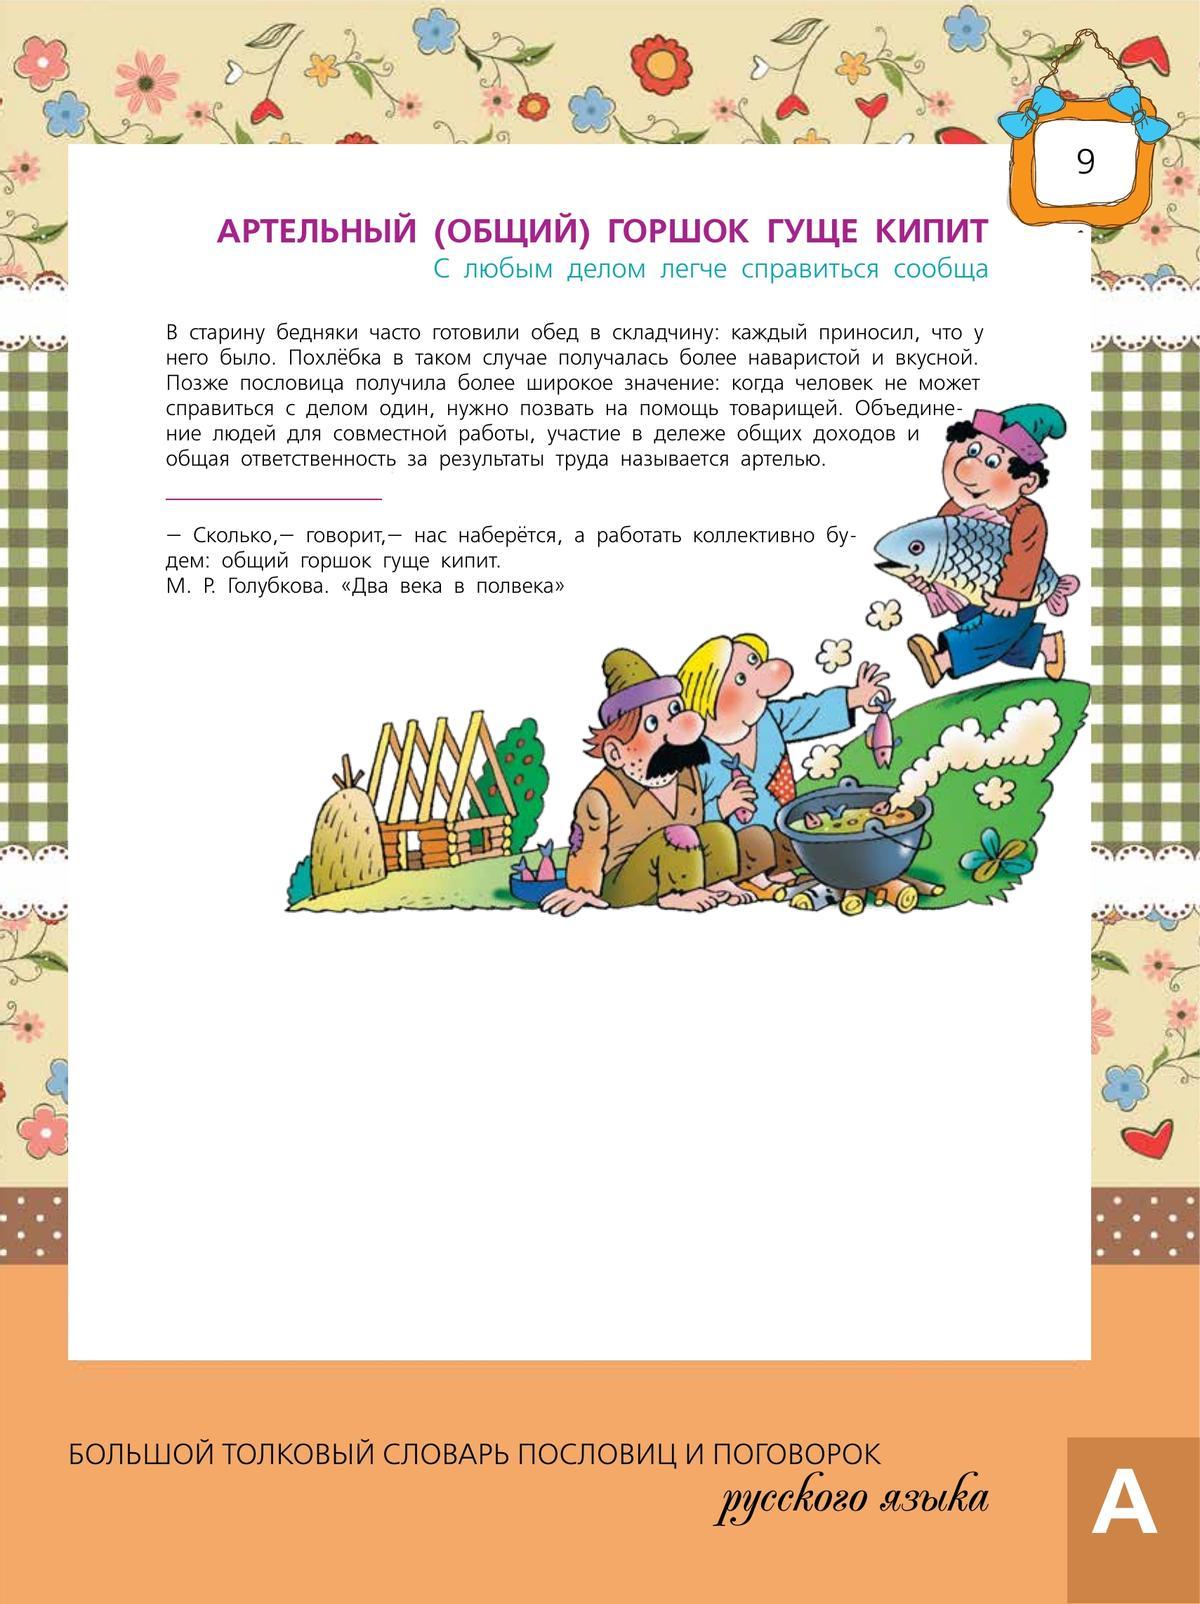 Большой толковый словарь пословиц и поговорок русского языка для детей 11